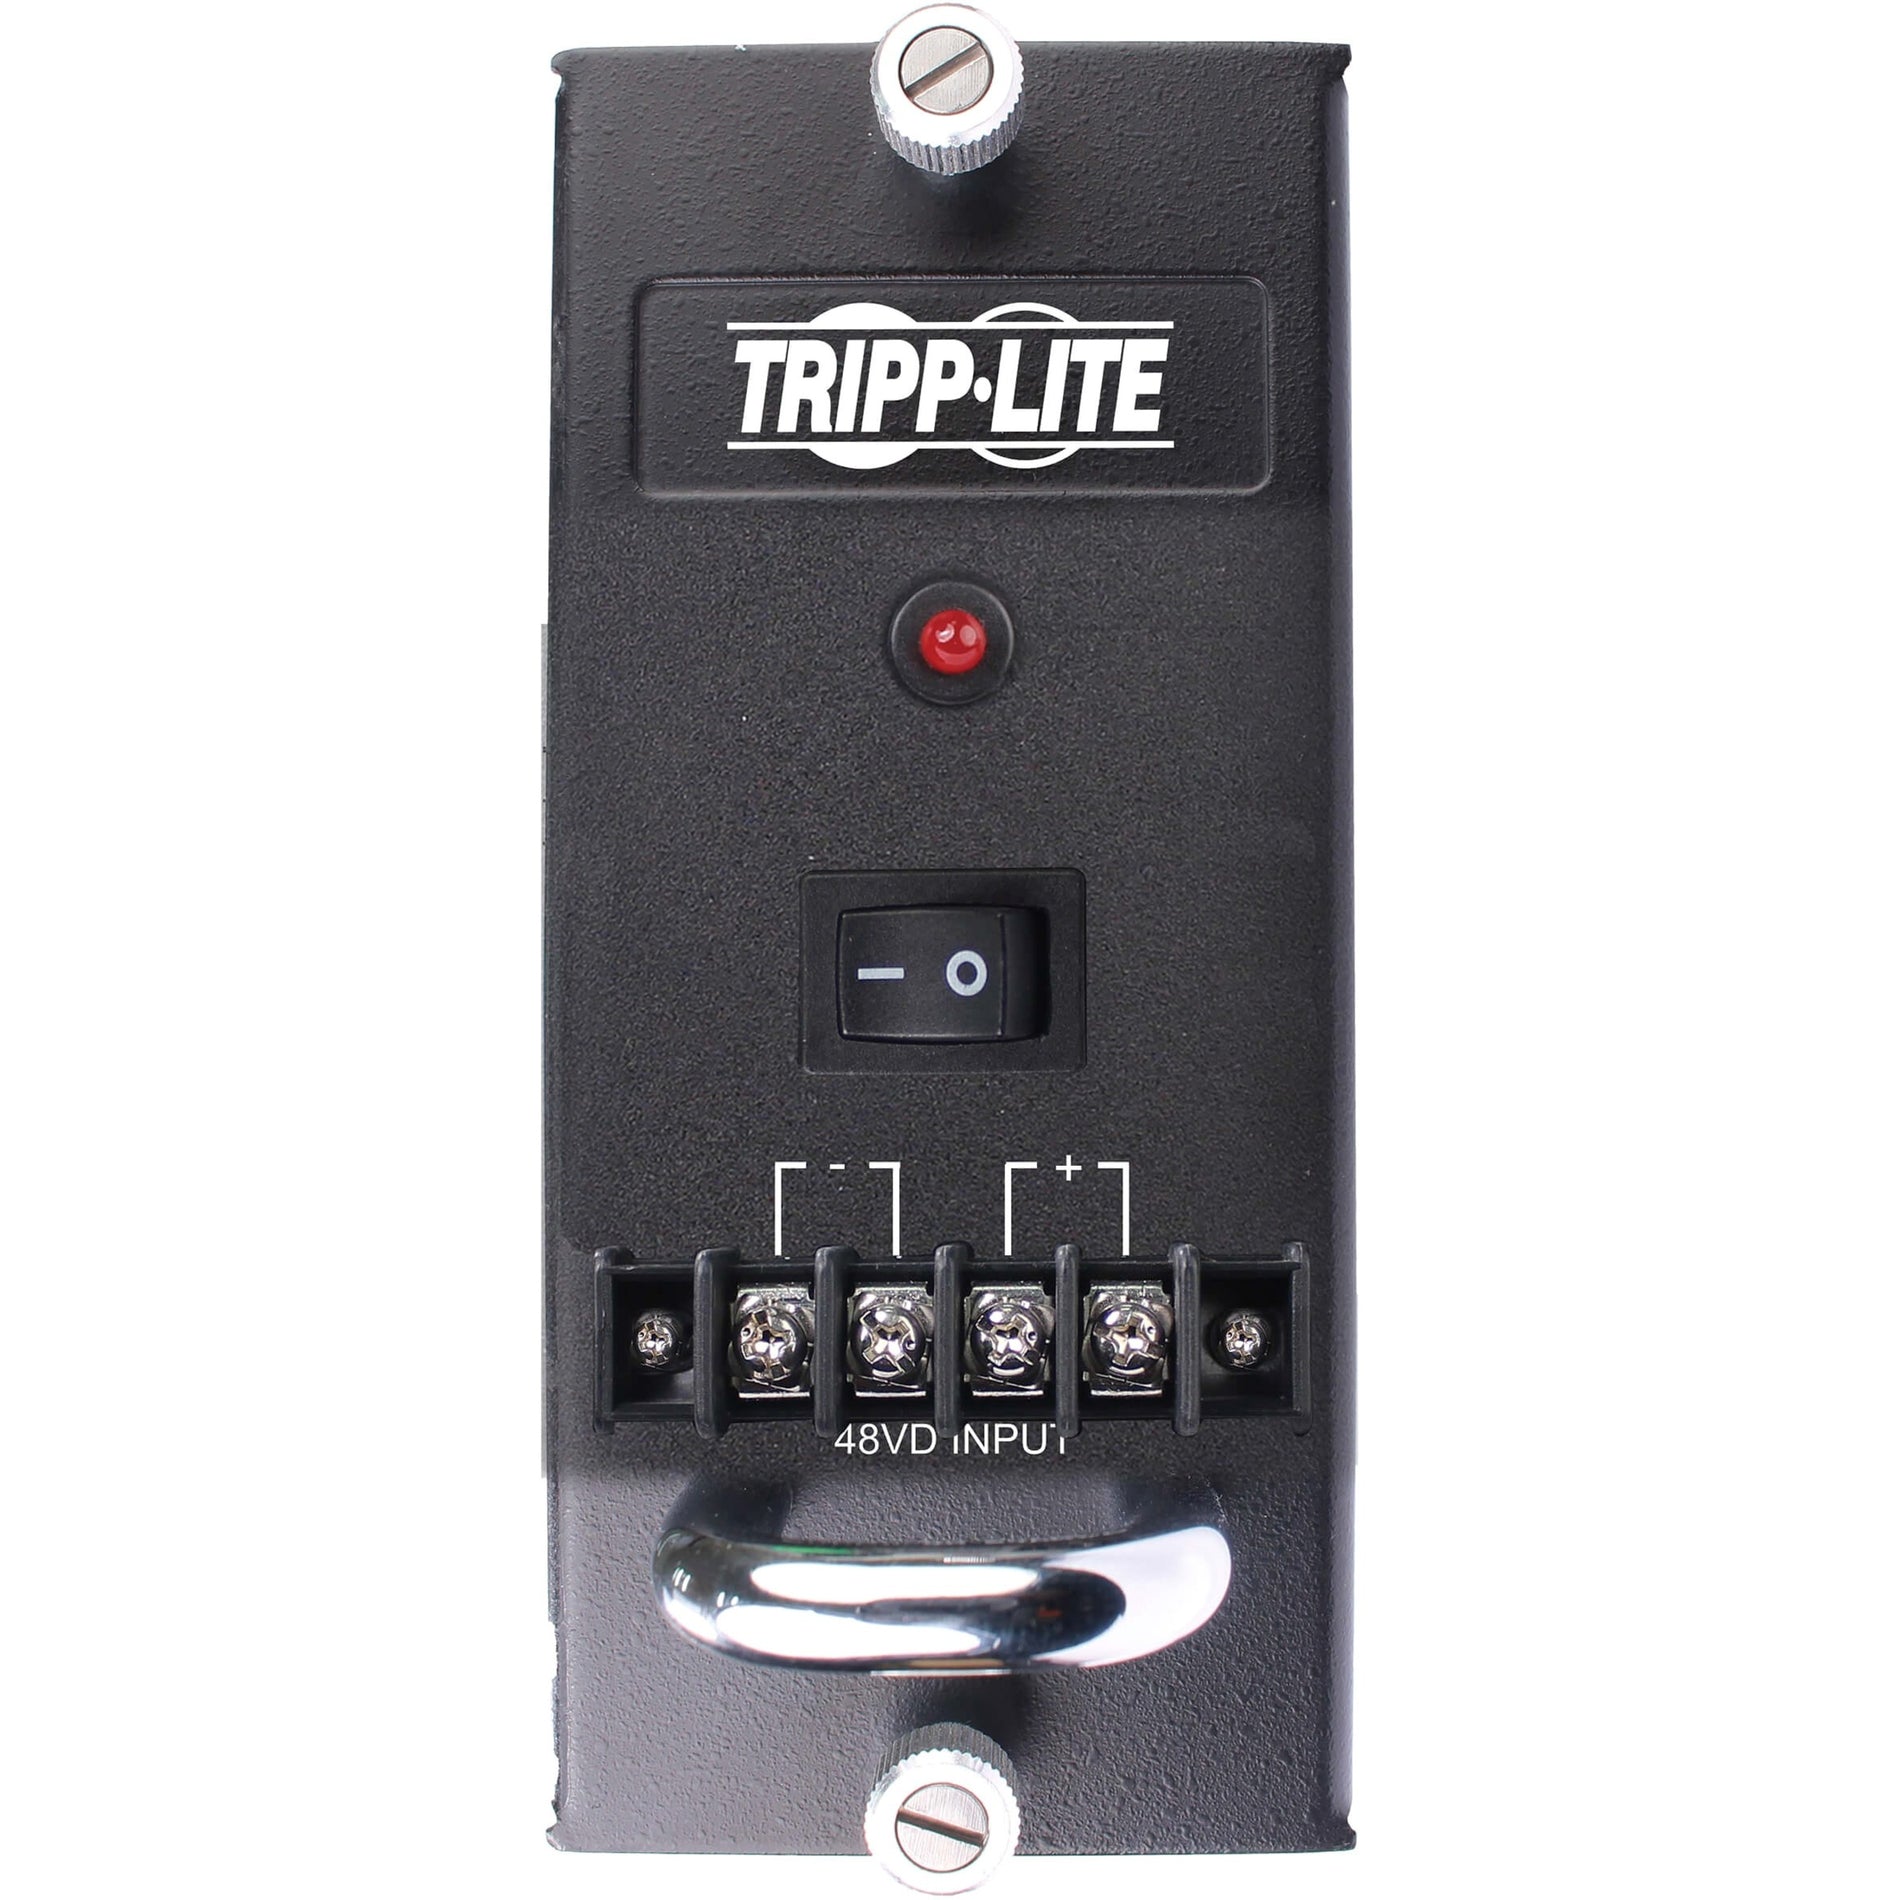 Tripp Lite N785-CH75W-DC 75W Power Supply 3 Year Warranty 12V @ 6.5A Output Power